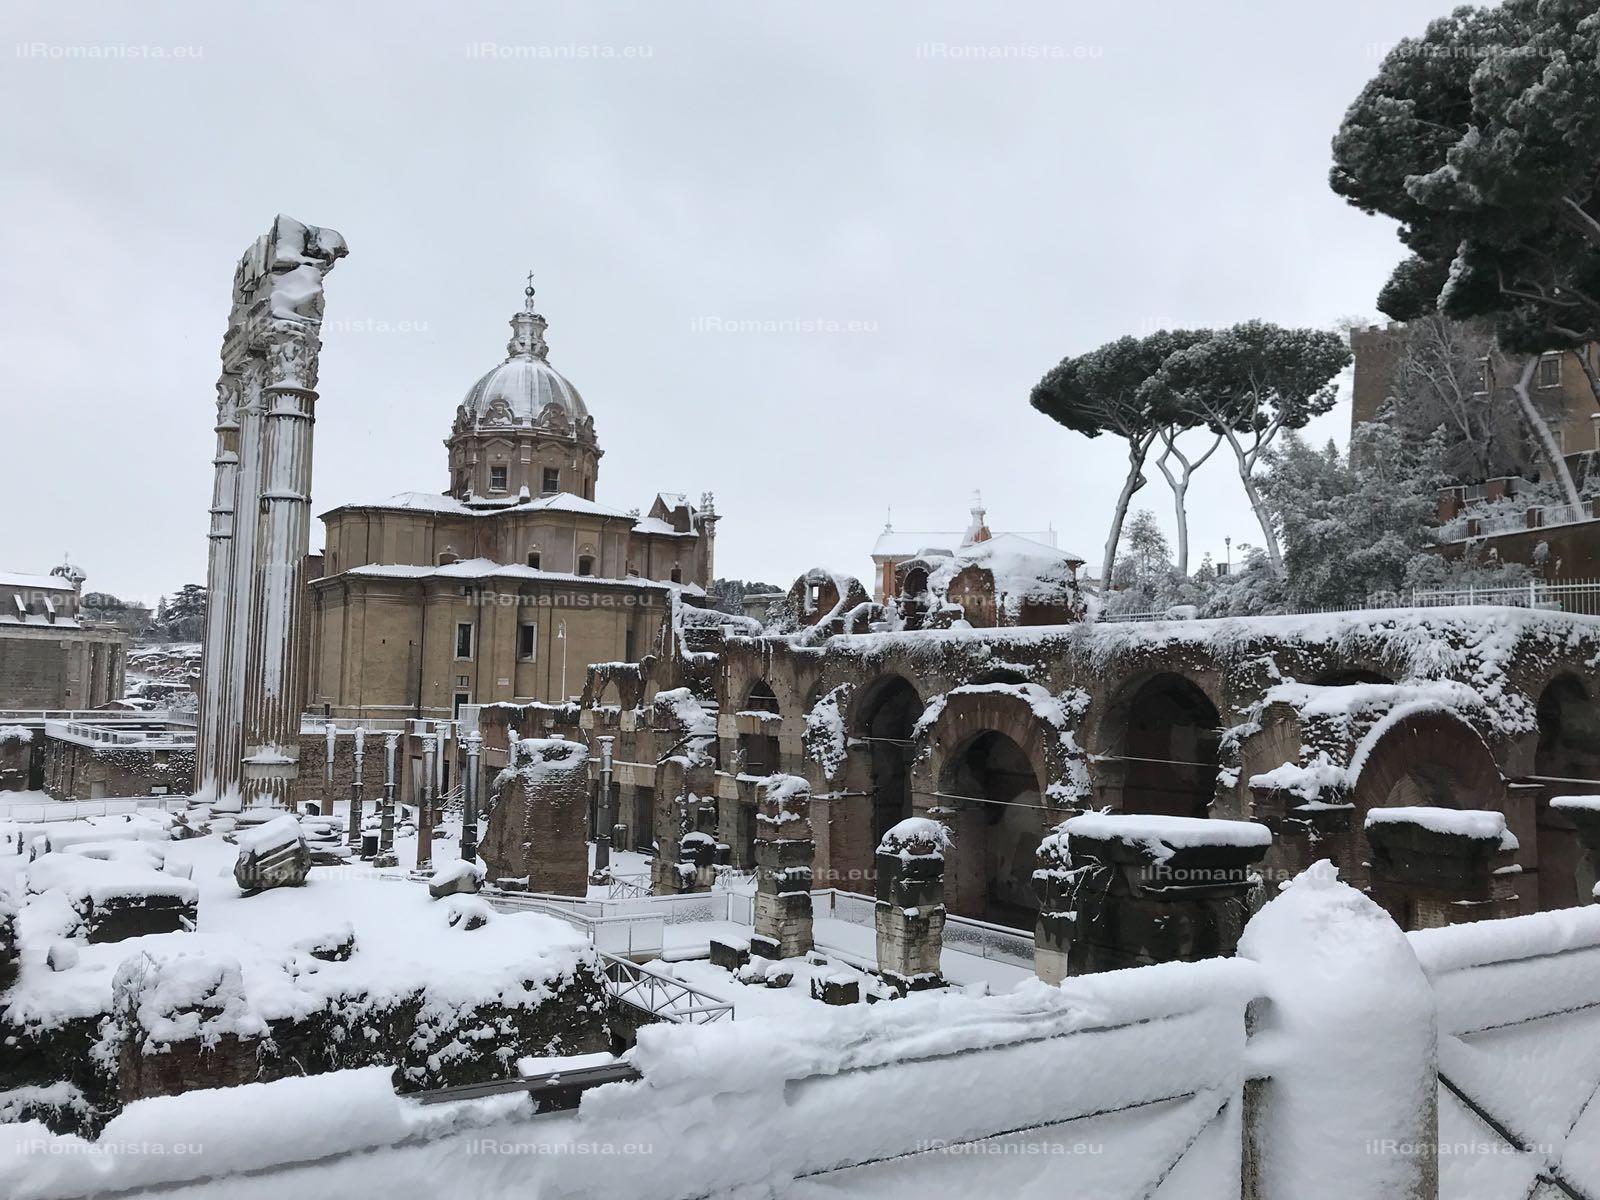 La neve ricopre Roma, gli ultimi aggiornamenti su meteo e trasporti